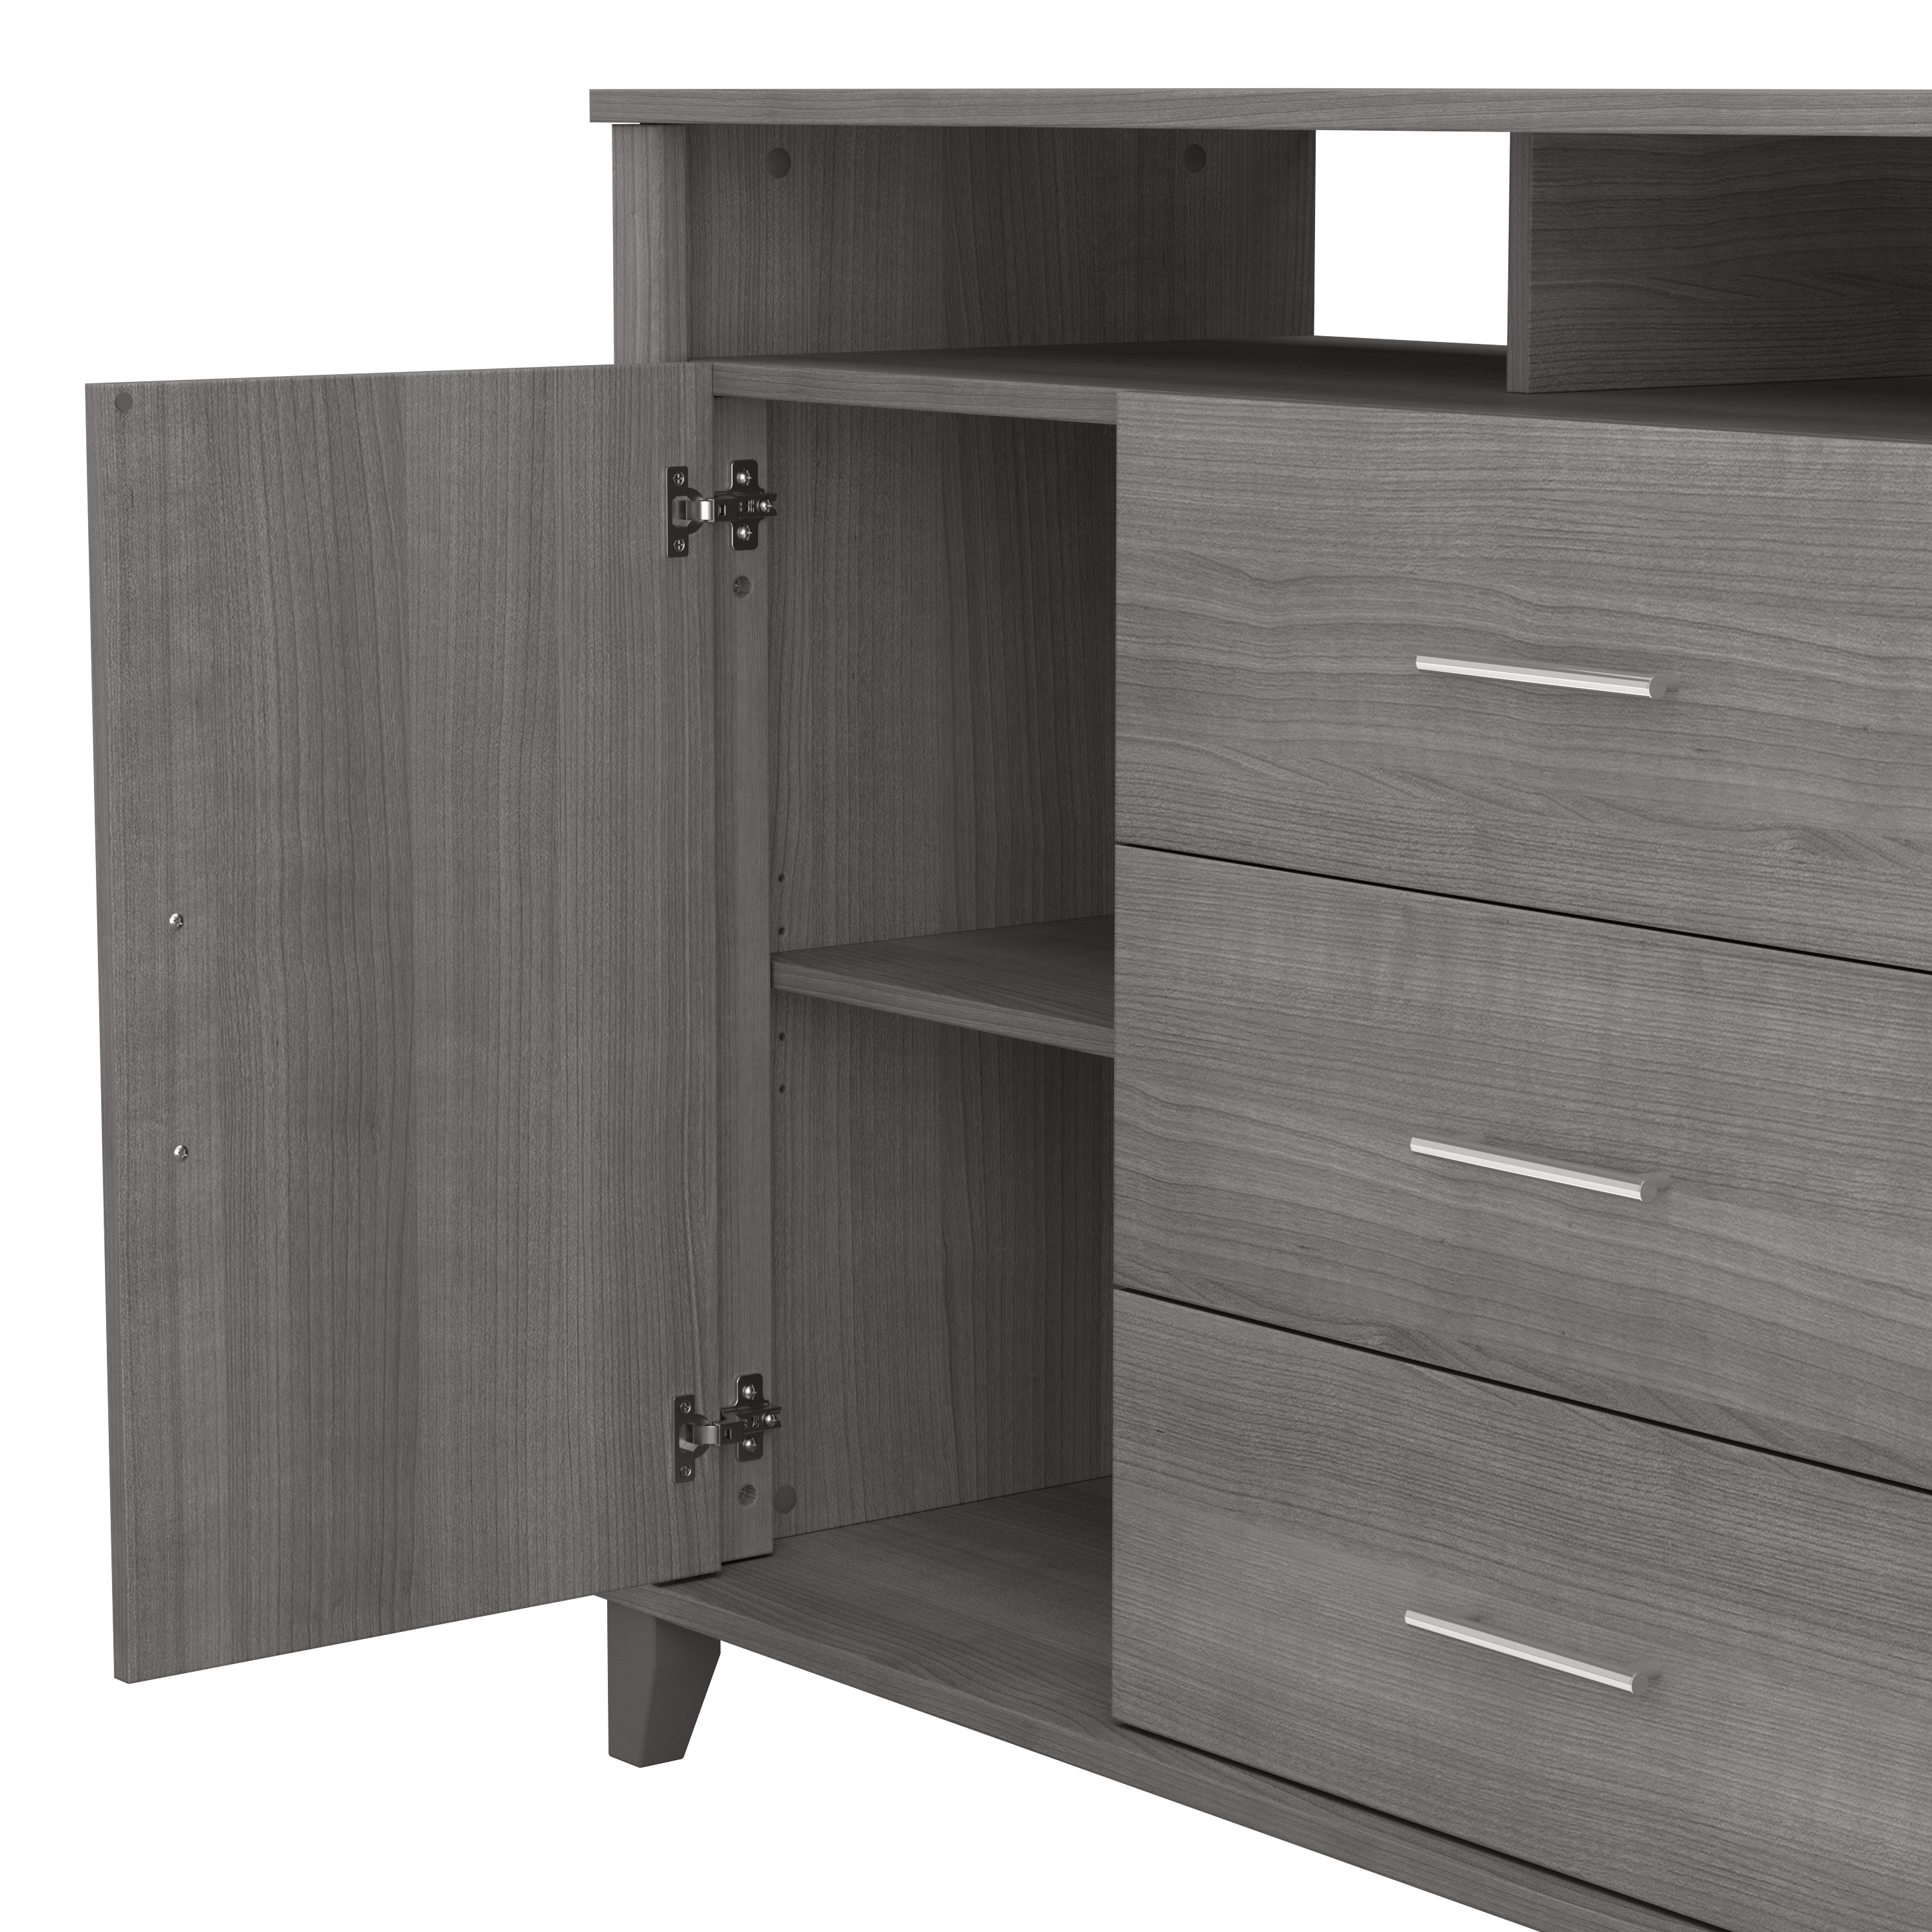 Shop Bush Furniture Somerset 3 Drawer Dresser and Bedroom TV Stand 04 STV148PGK #color_platinum gray